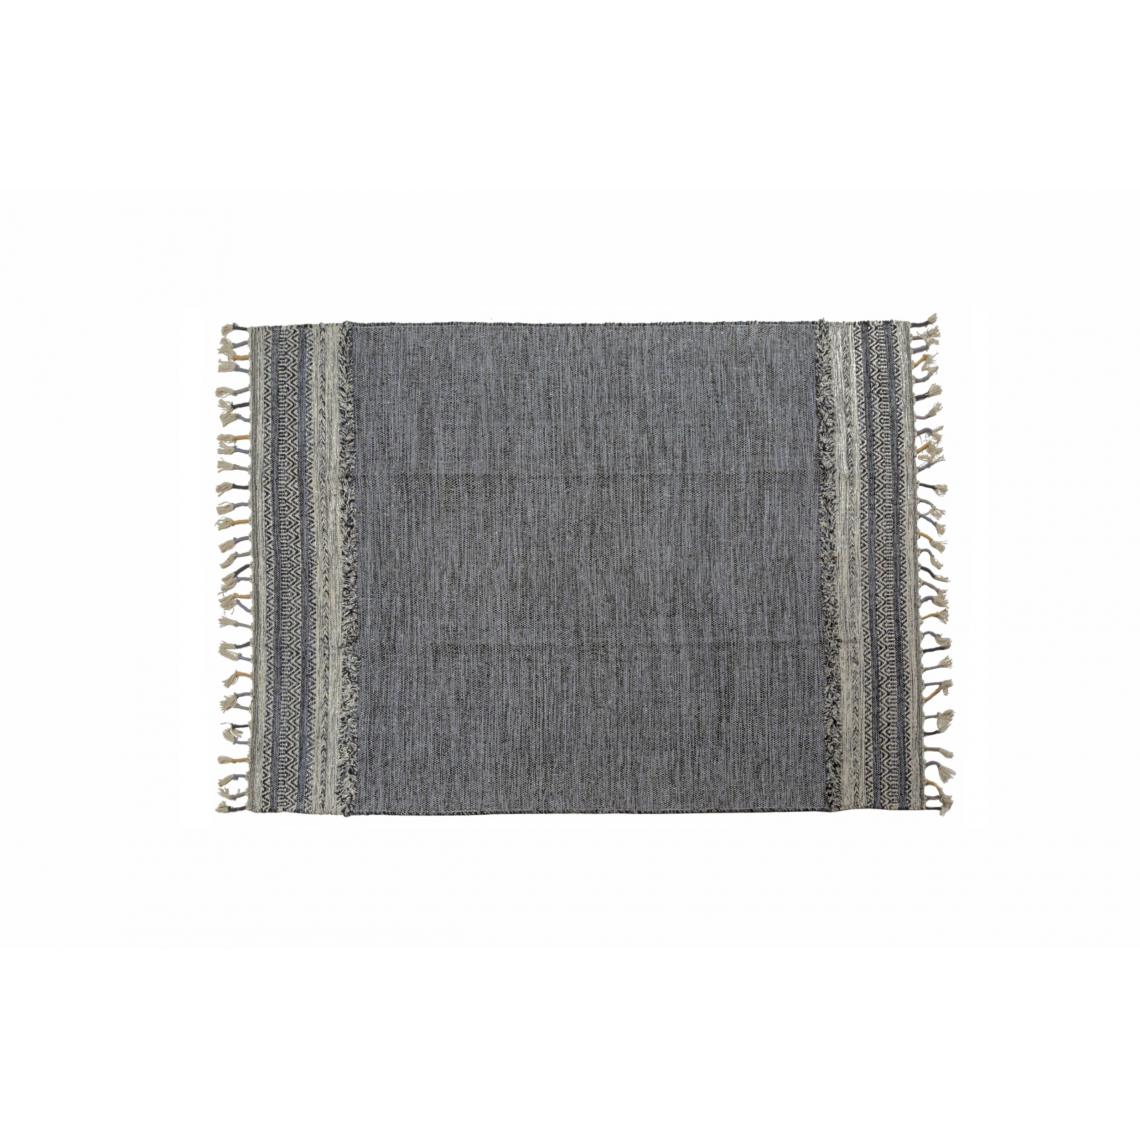 Alter - Tapis boston moderne, style kilim, 100% coton, noir, 200x140cm - Tapis